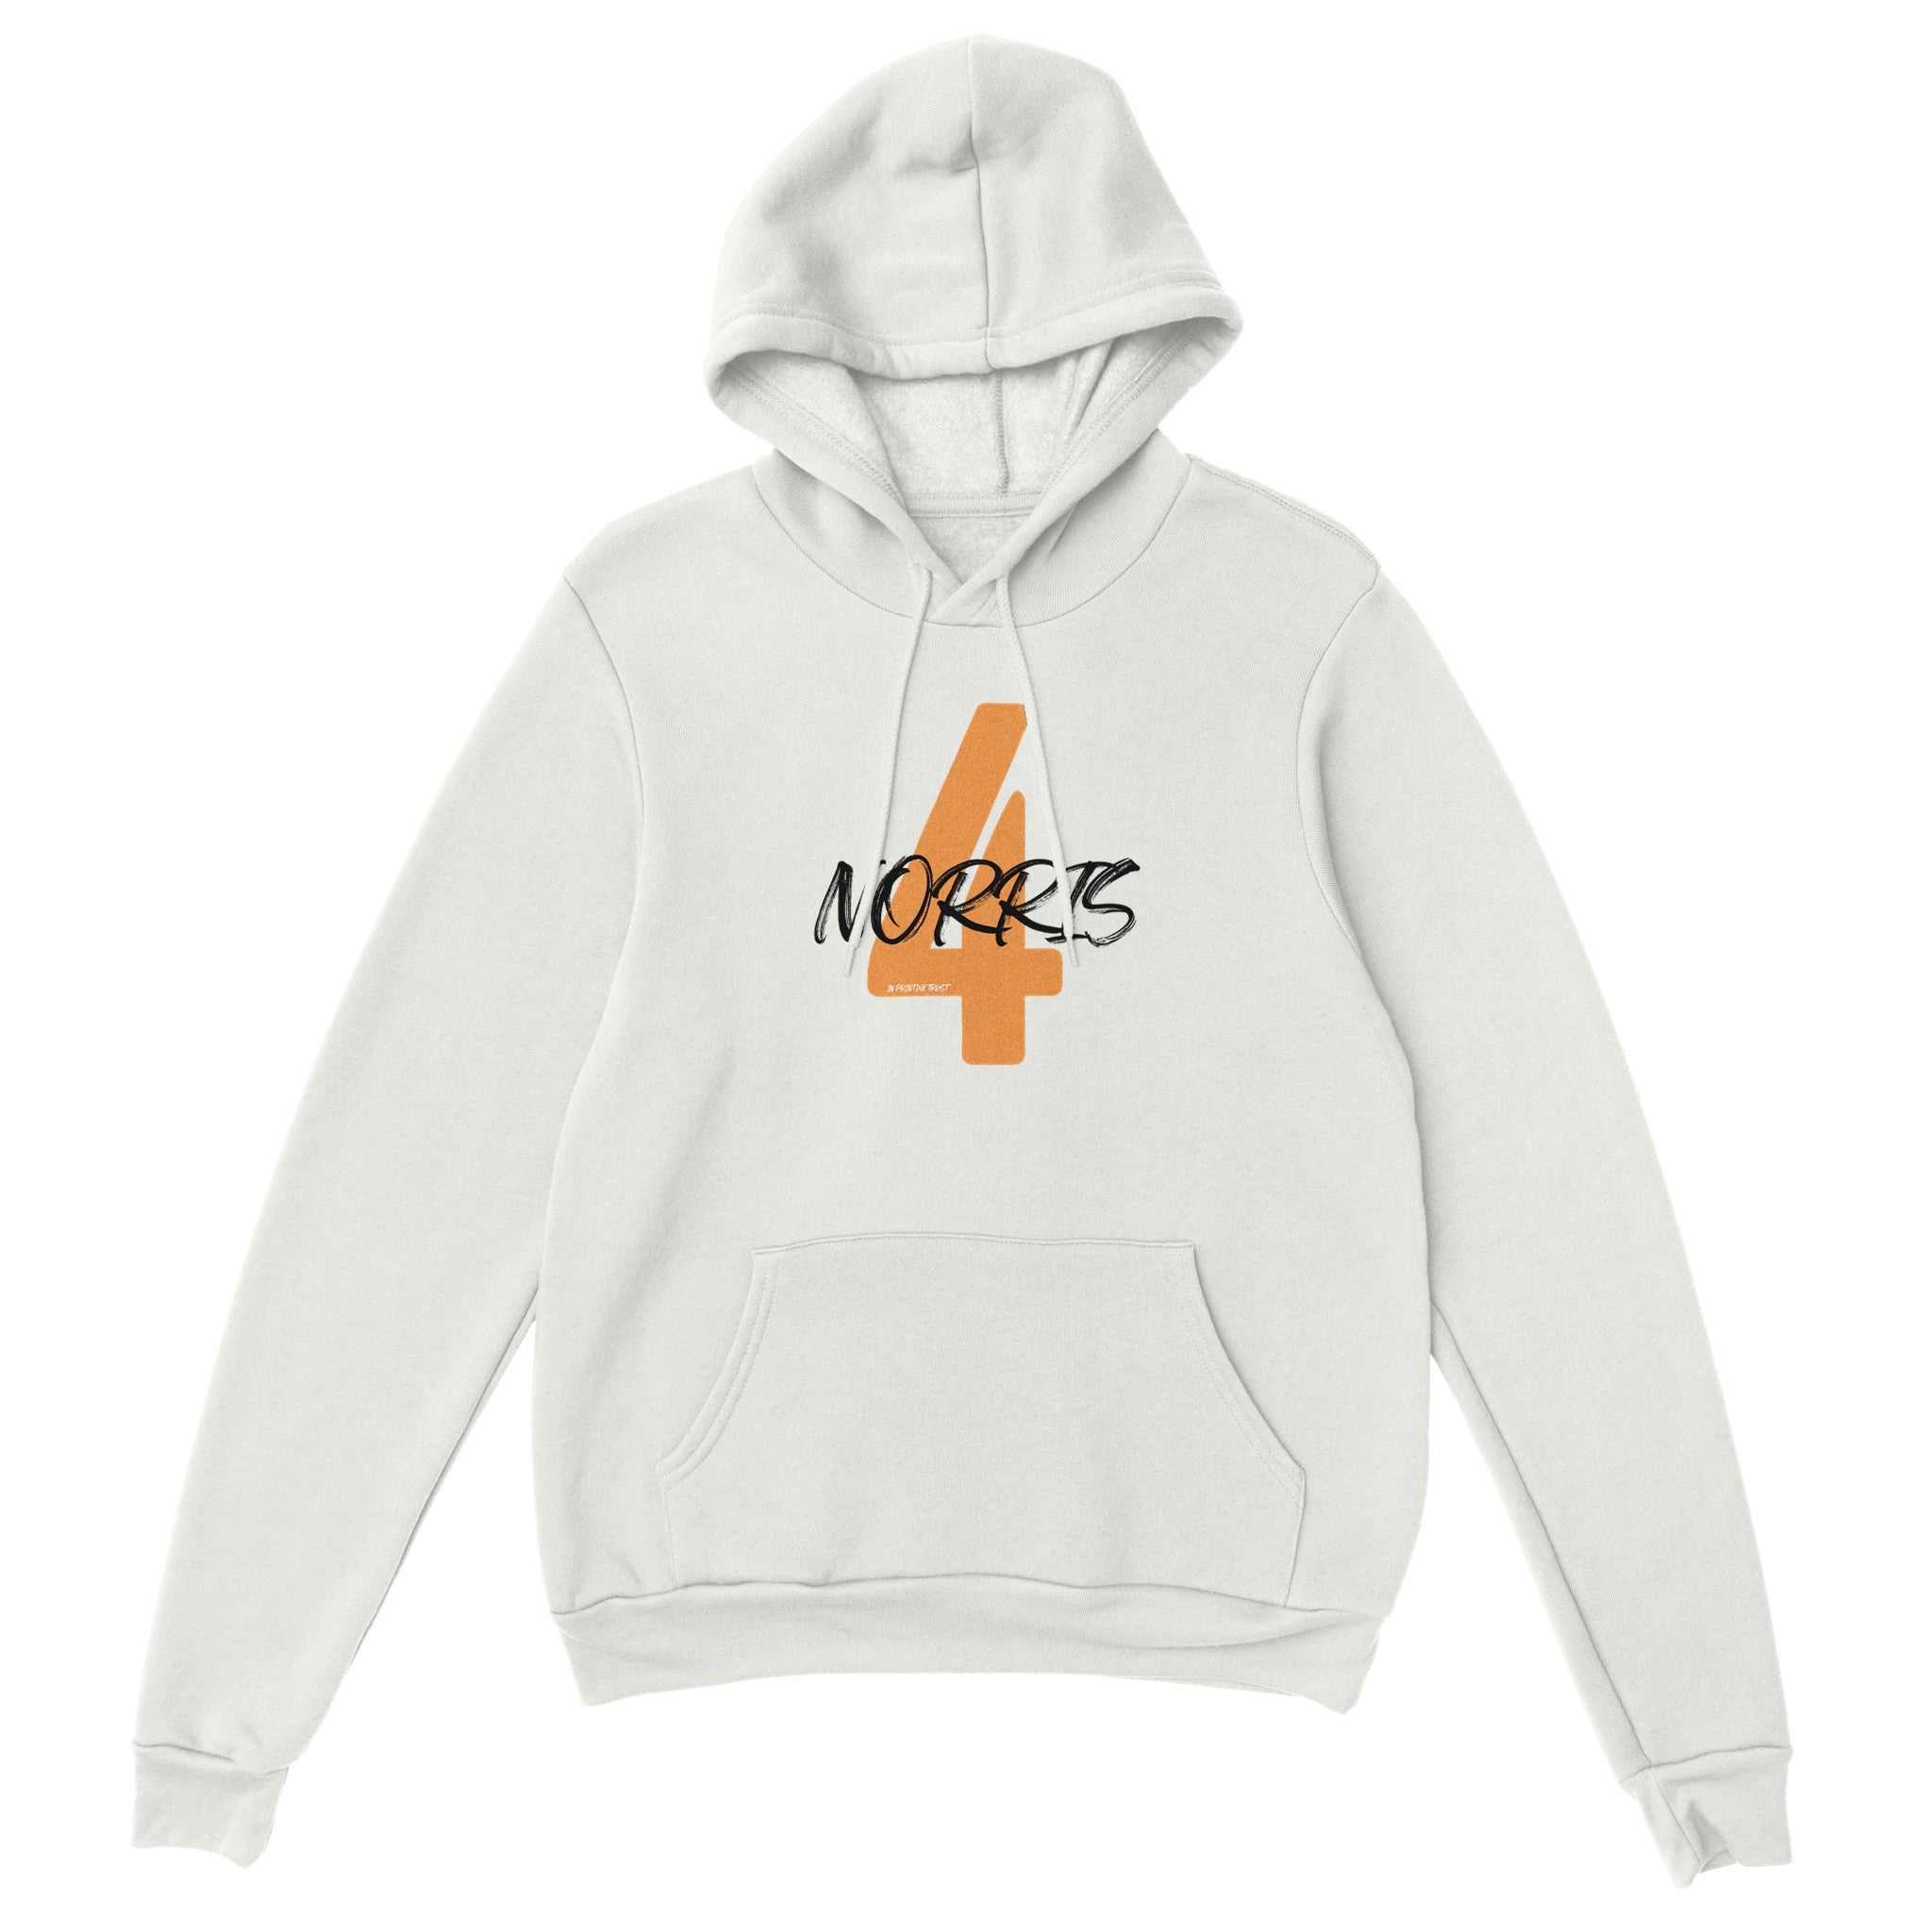 'Norris 4' hoodie - In Print We Trust